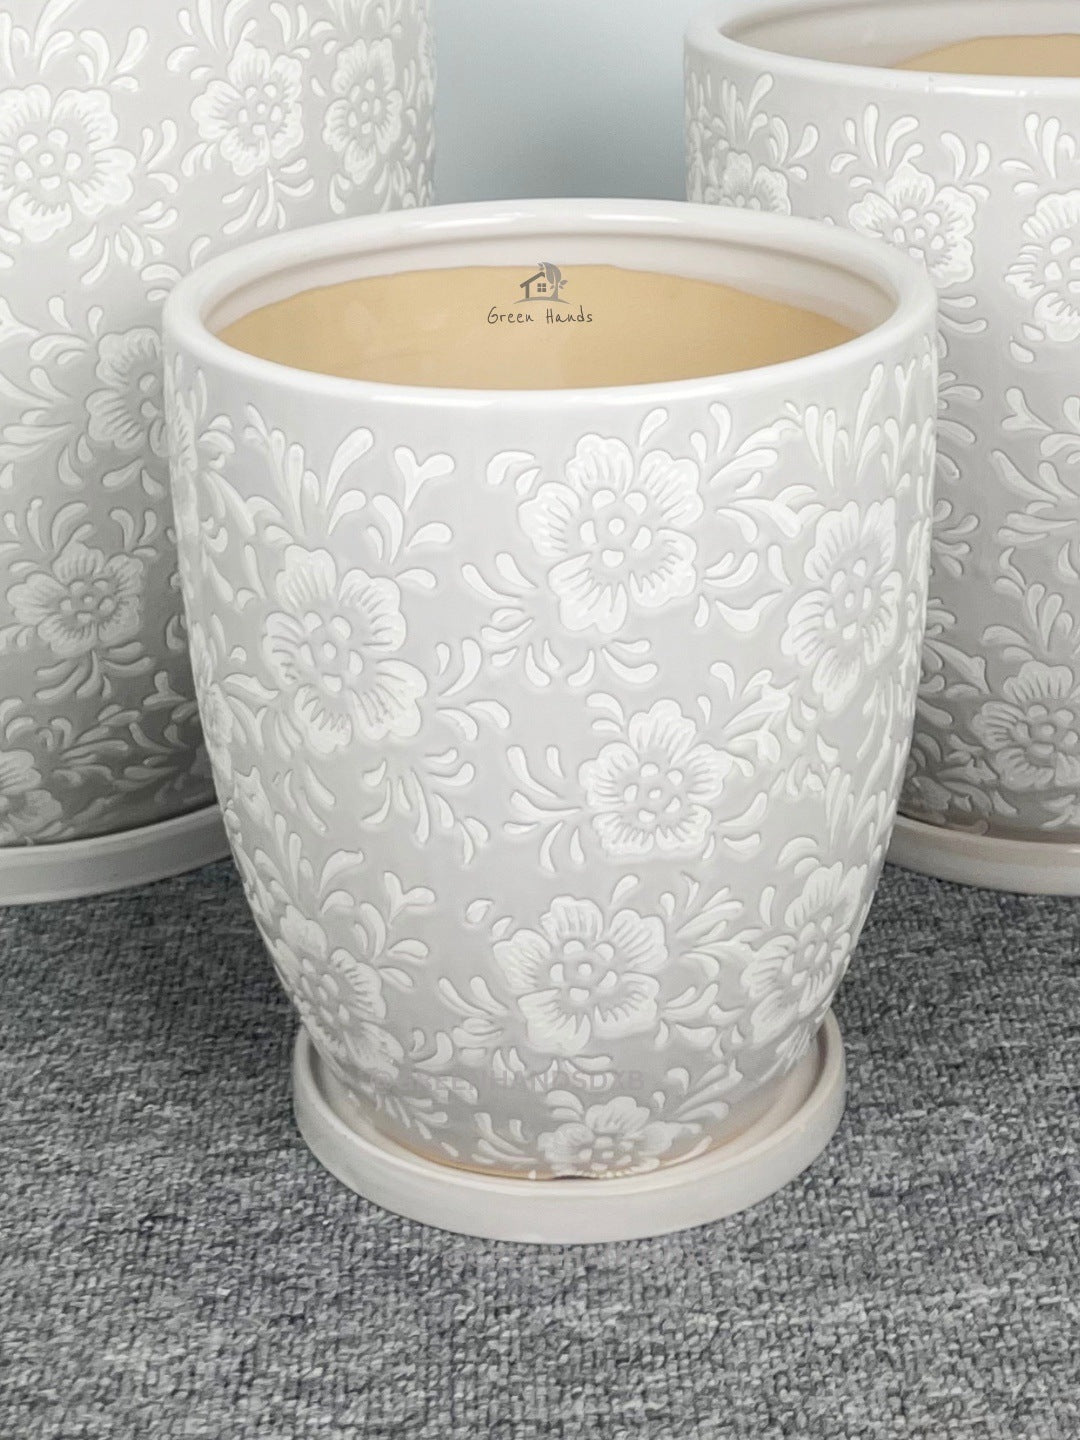 Antique Floral Ceramic Pots: Aesthetic Elegance for UAE Minimalist Spaces